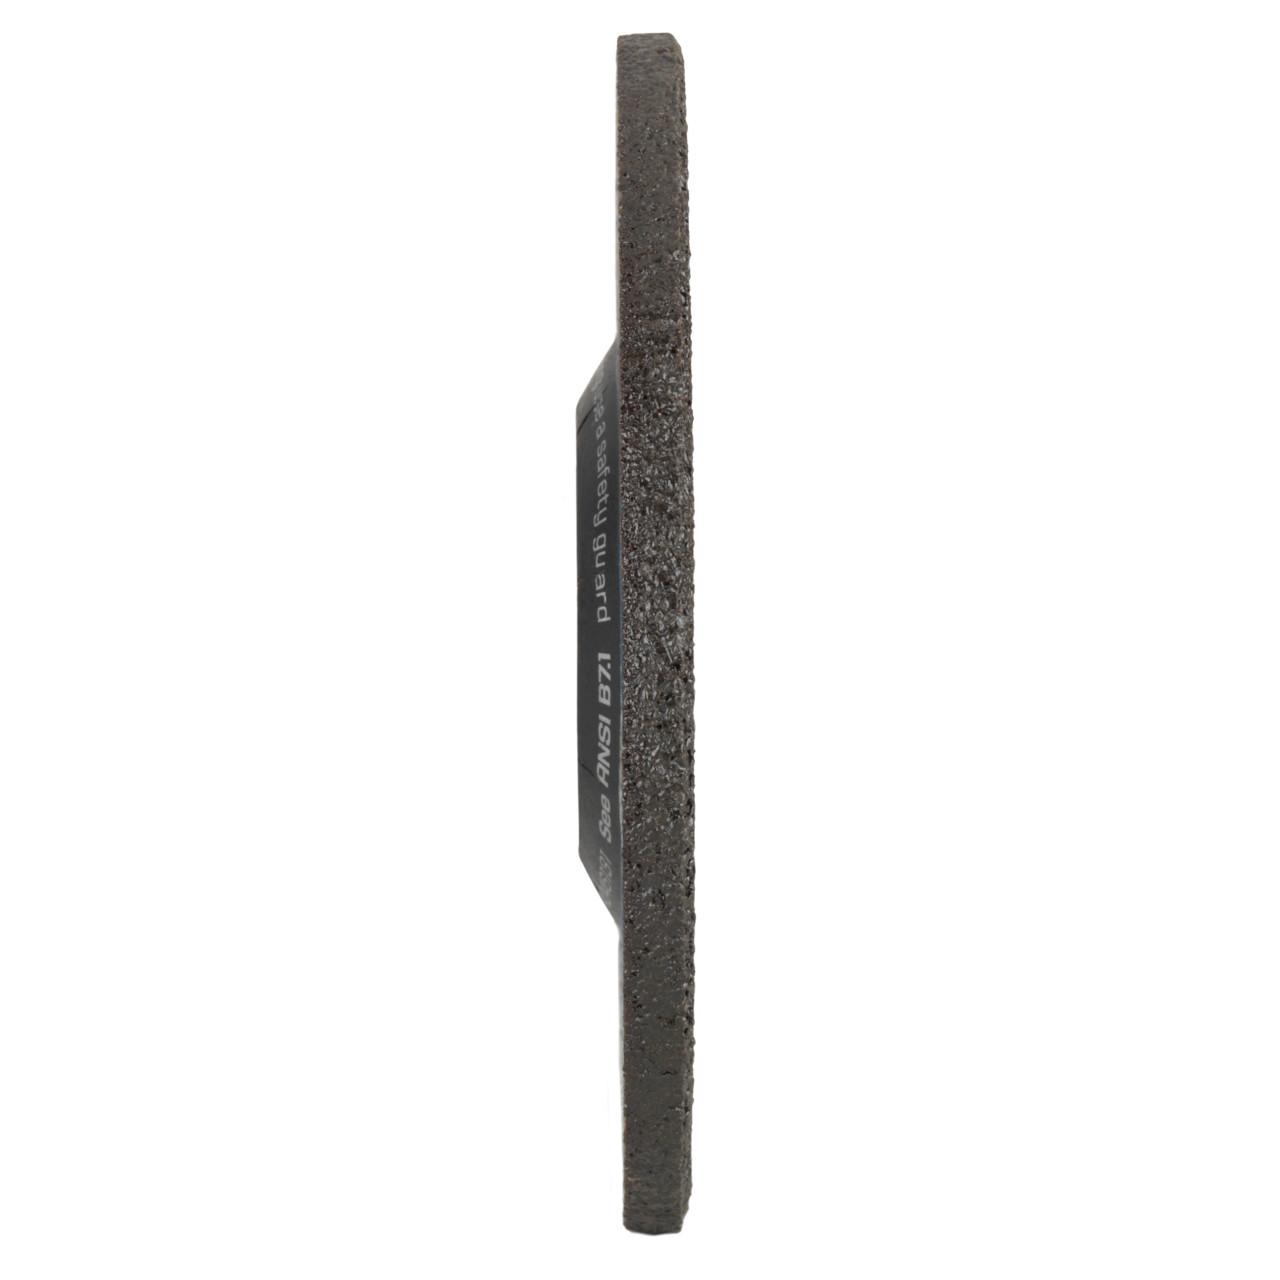 TYROLIT slijpschijf DxUxH 115x4x22,23 2in1 voor staal en roestvrij staal, vorm: 27 - offset-uitvoering, Art. 5287